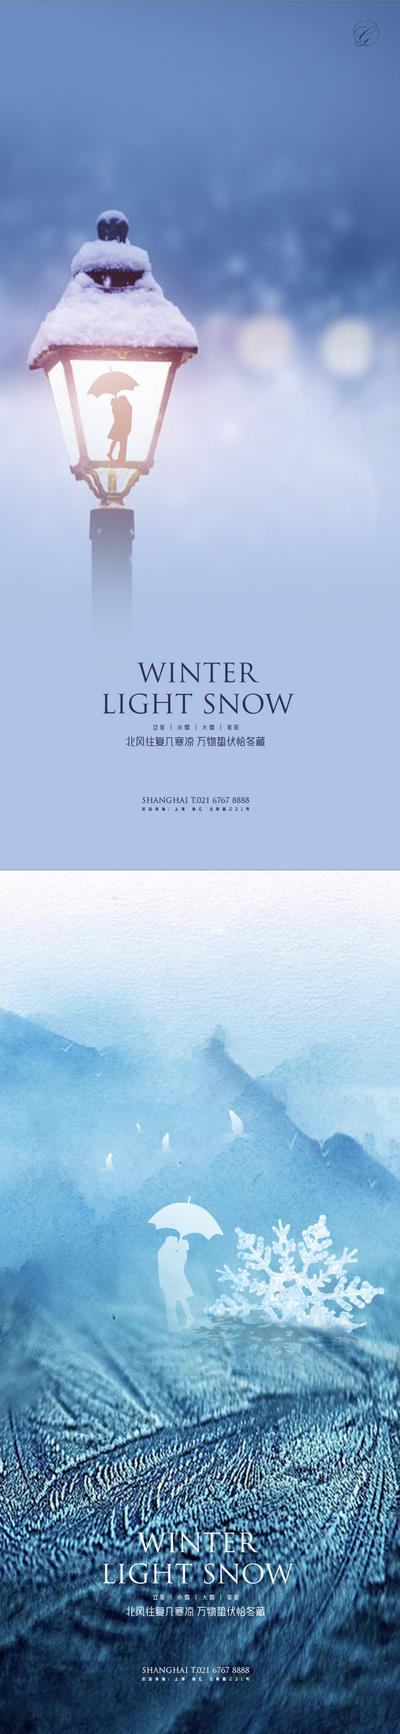 南门网 海报 二十四节气 立冬 小雪 大雪 冬至  路灯  系列